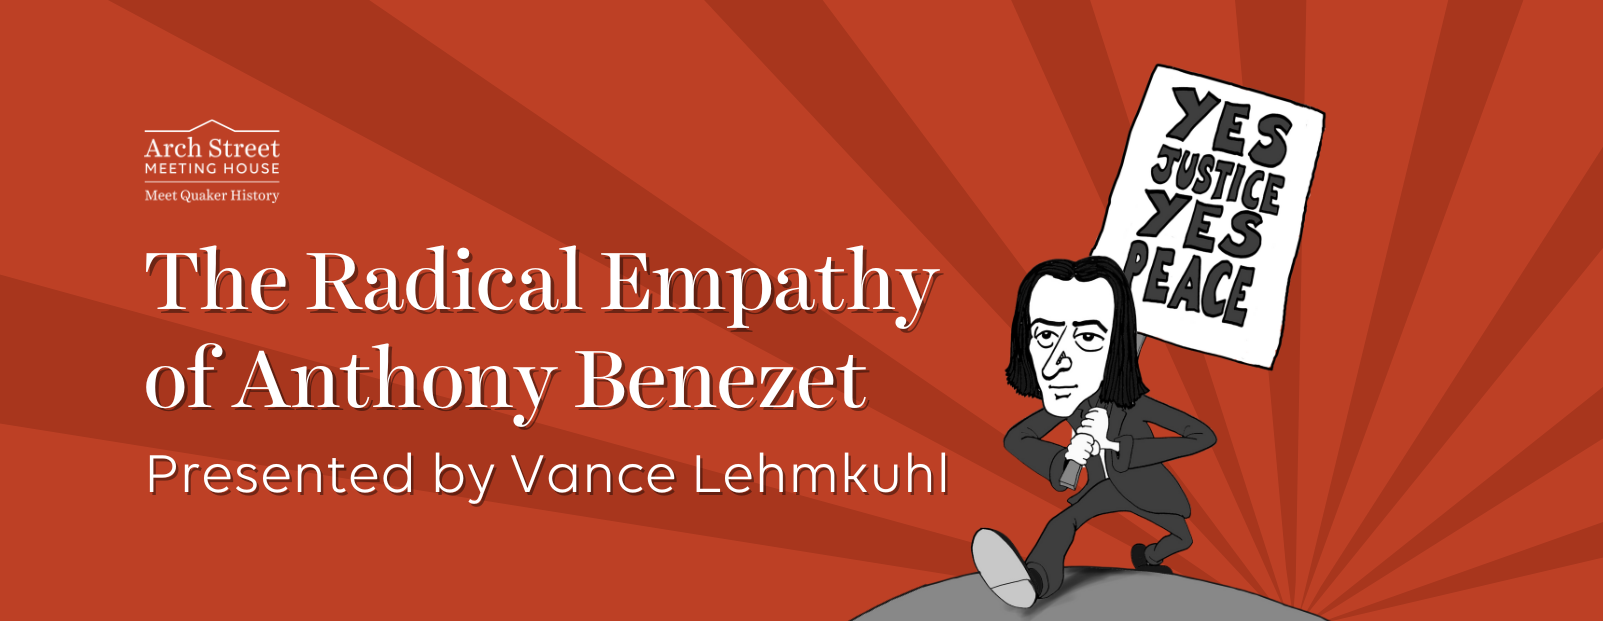 The Radical Empathy of Anthony Benezet